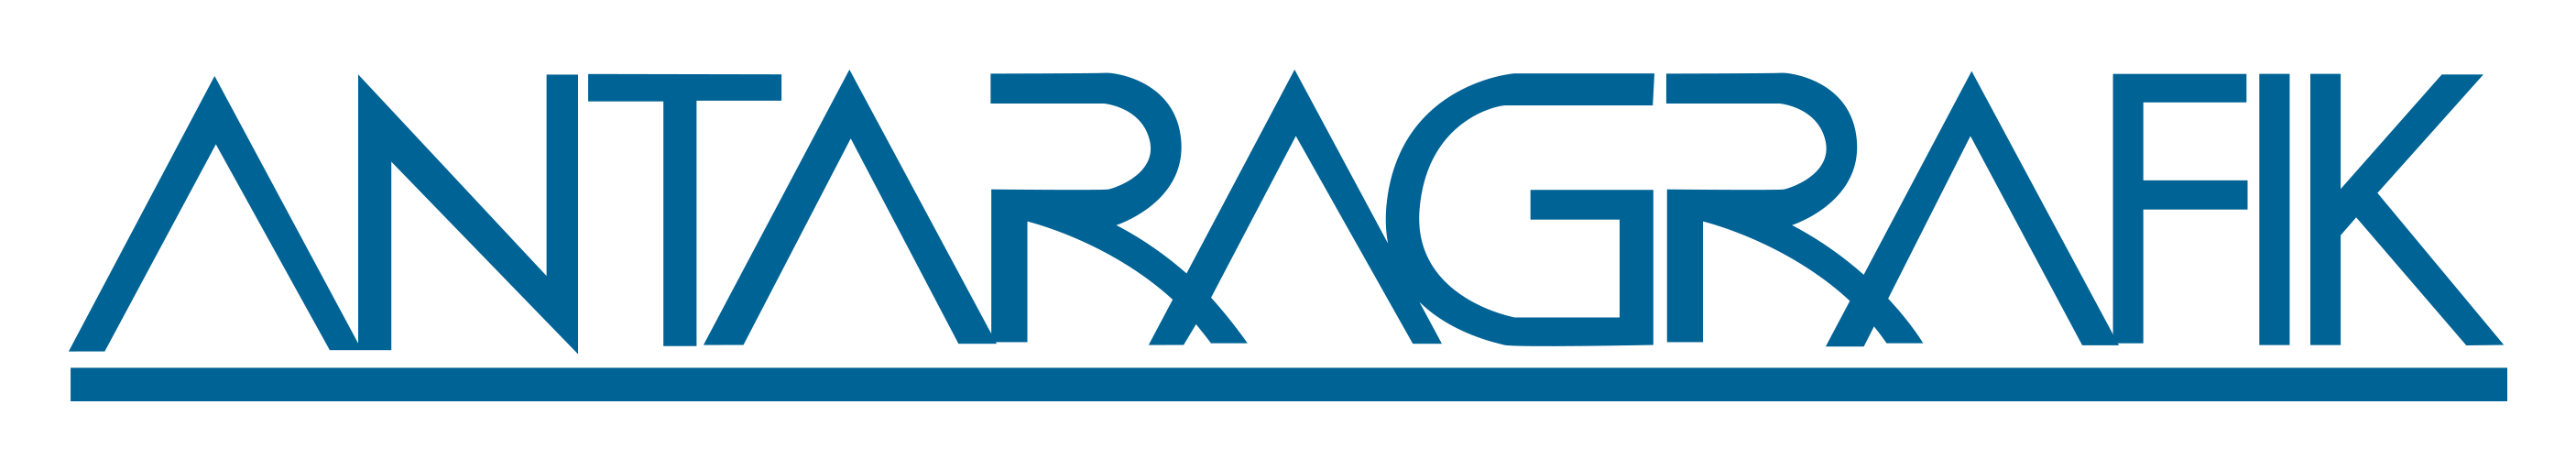 Antaragrafik logo